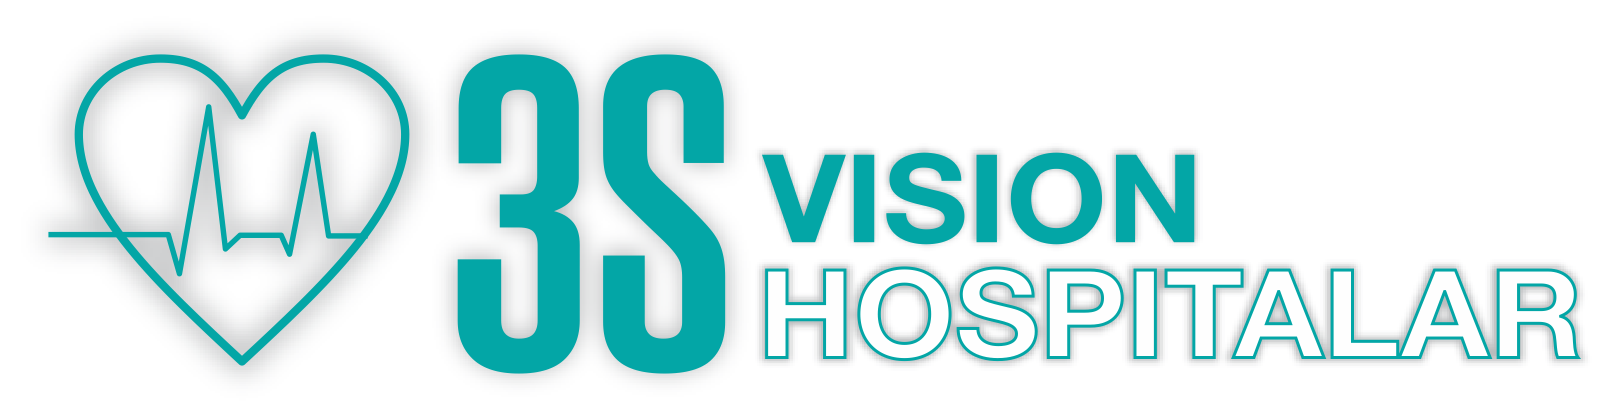 3S Vision Hospitalar